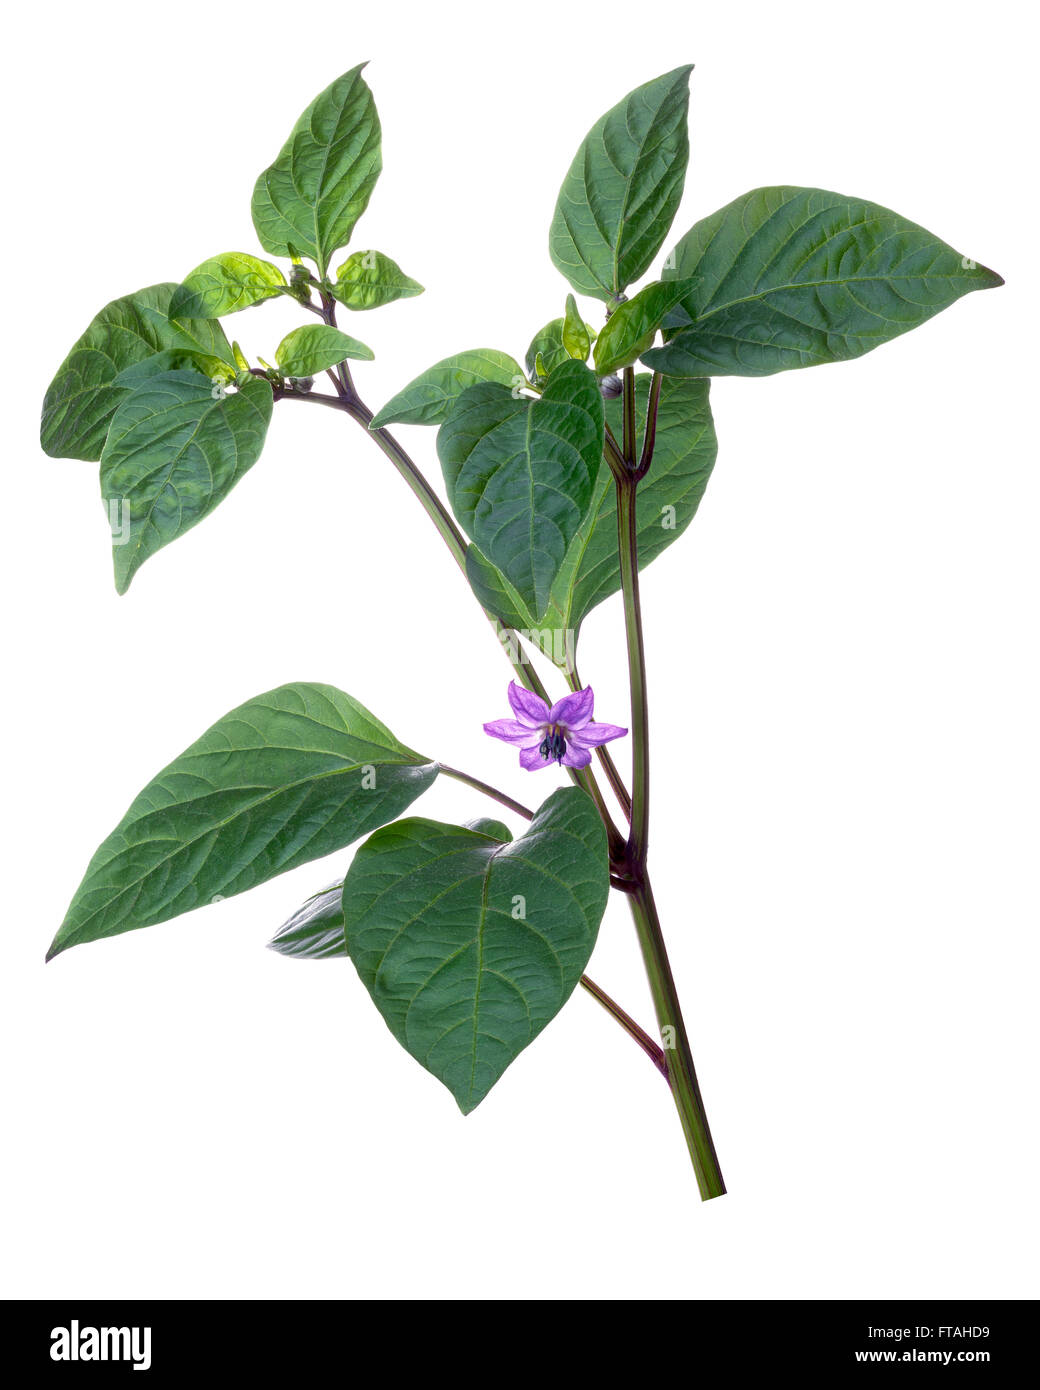 La floraison poivron (Capsicum annuum), arc-en-ciel bolivien variété. Clipping path Banque D'Images